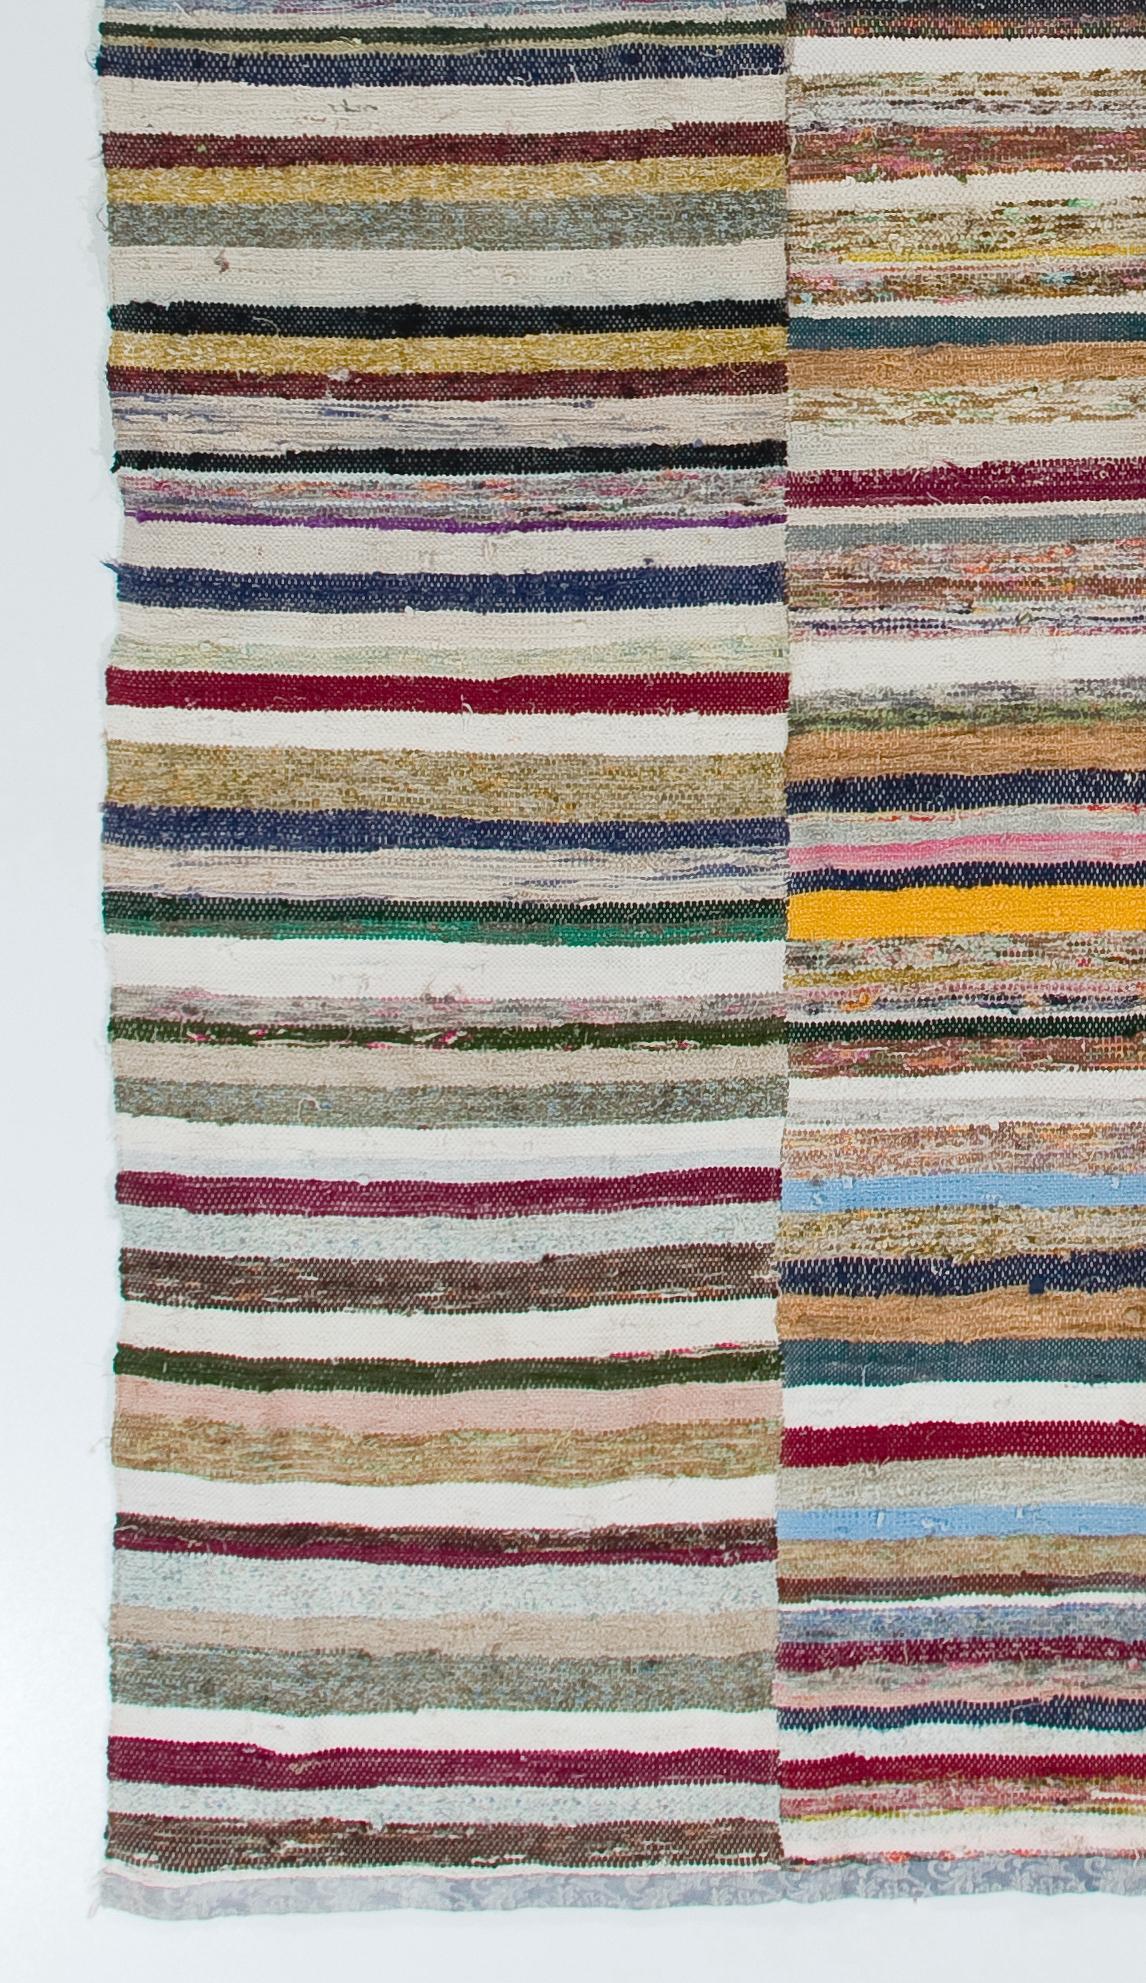 Hand-Woven Colorful Vintage Banded Cotton Kilim, Flat-Weave Rag Rug, Adjustable For Sale